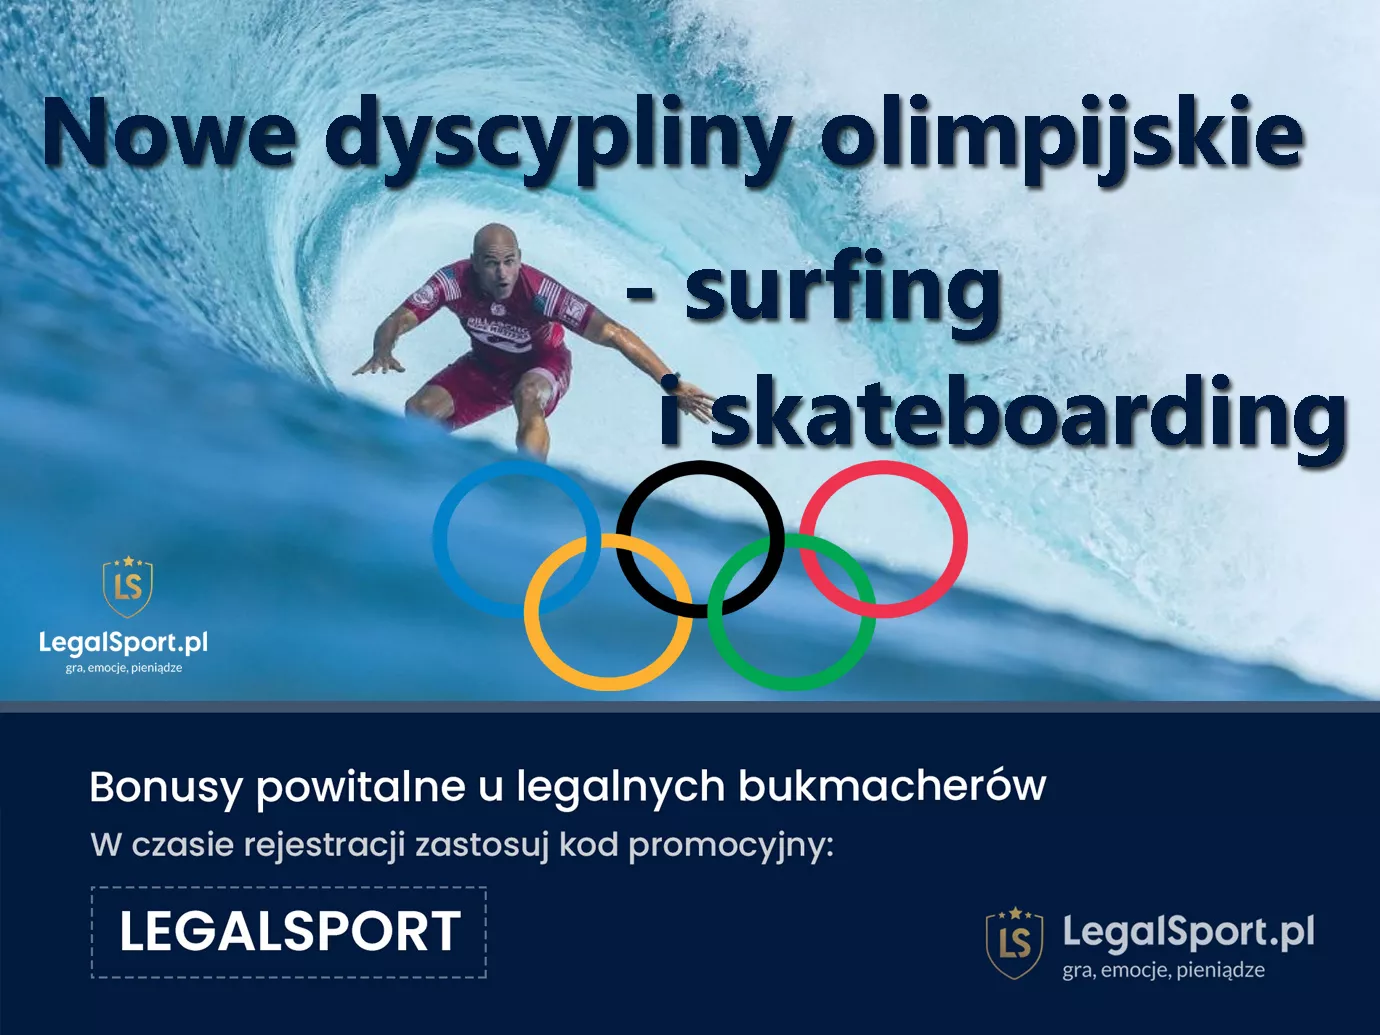 Surfing i skateboarding na igrzyskach - i u bukmacherów?